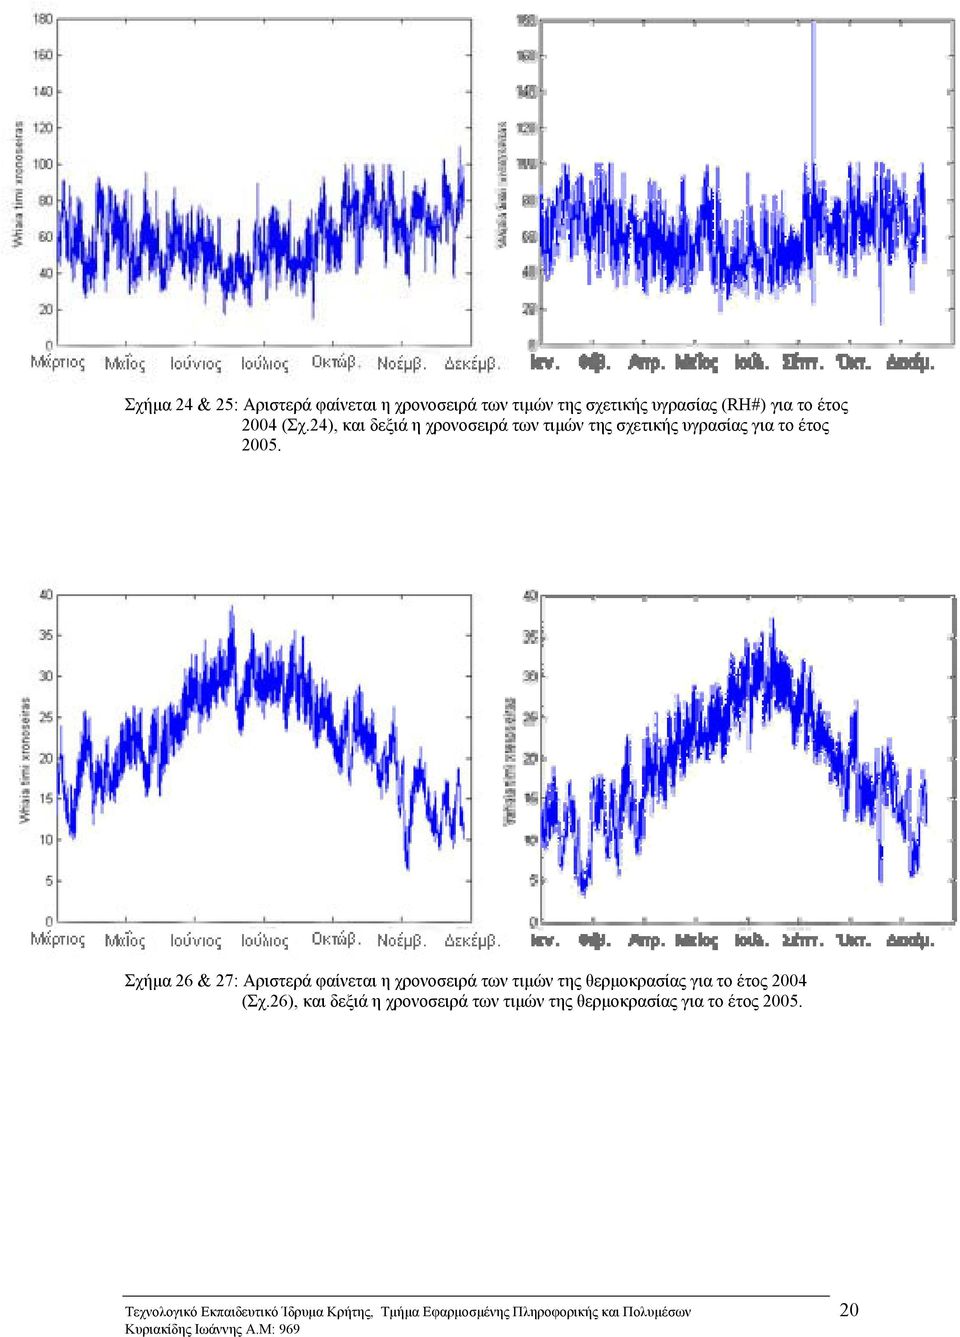 Σχήμα 26 & 27: Αριστερά φαίνεται η χρονοσειρά των τιμών της θερμοκρασίας για το έτος 2004 (Σχ.